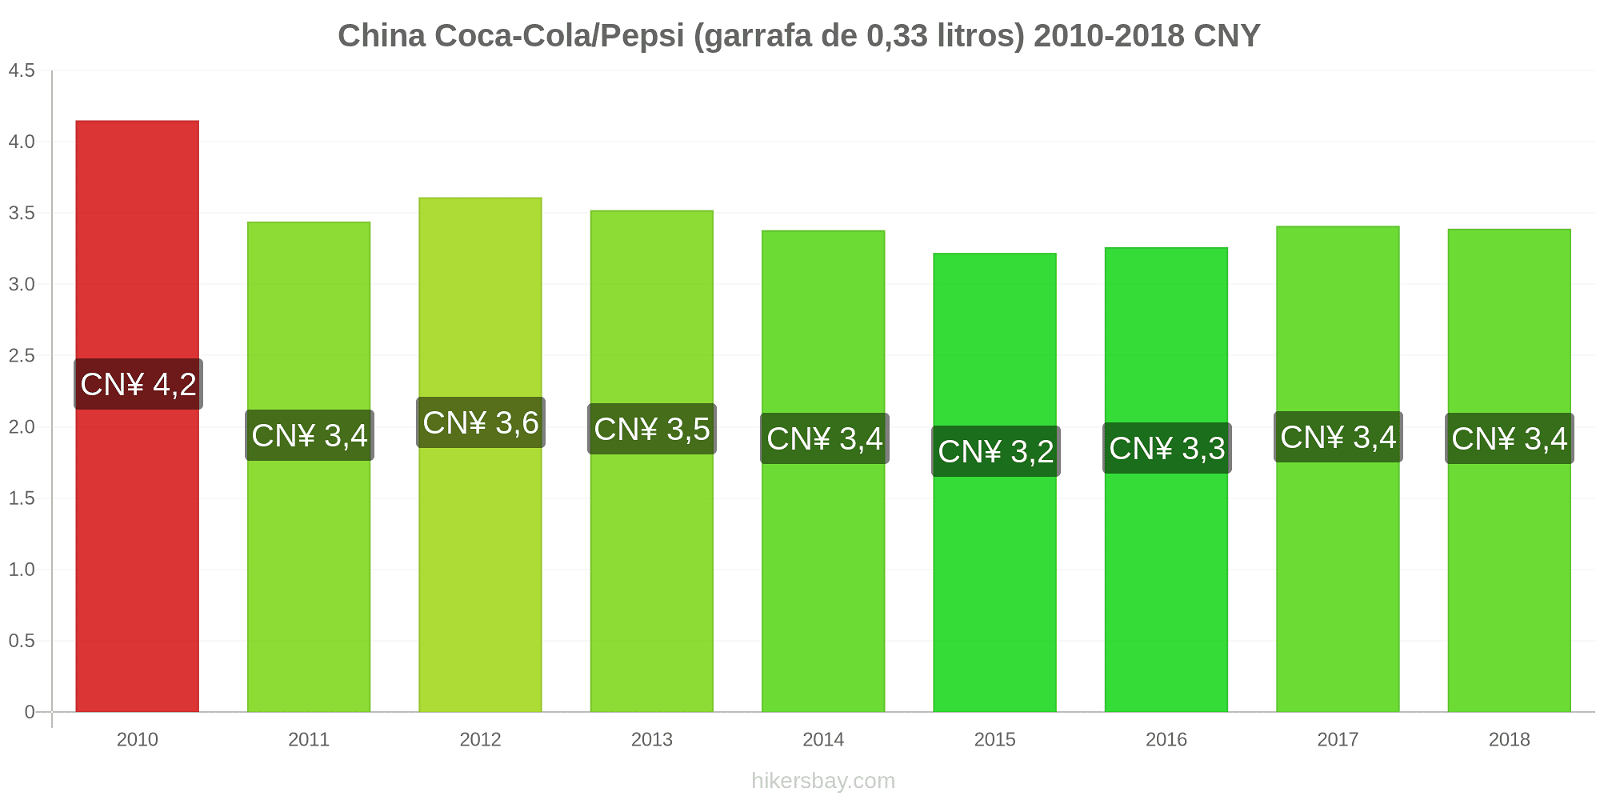 China mudanças de preços Coca-Cola/Pepsi (garrafa de 0.33 litros) hikersbay.com